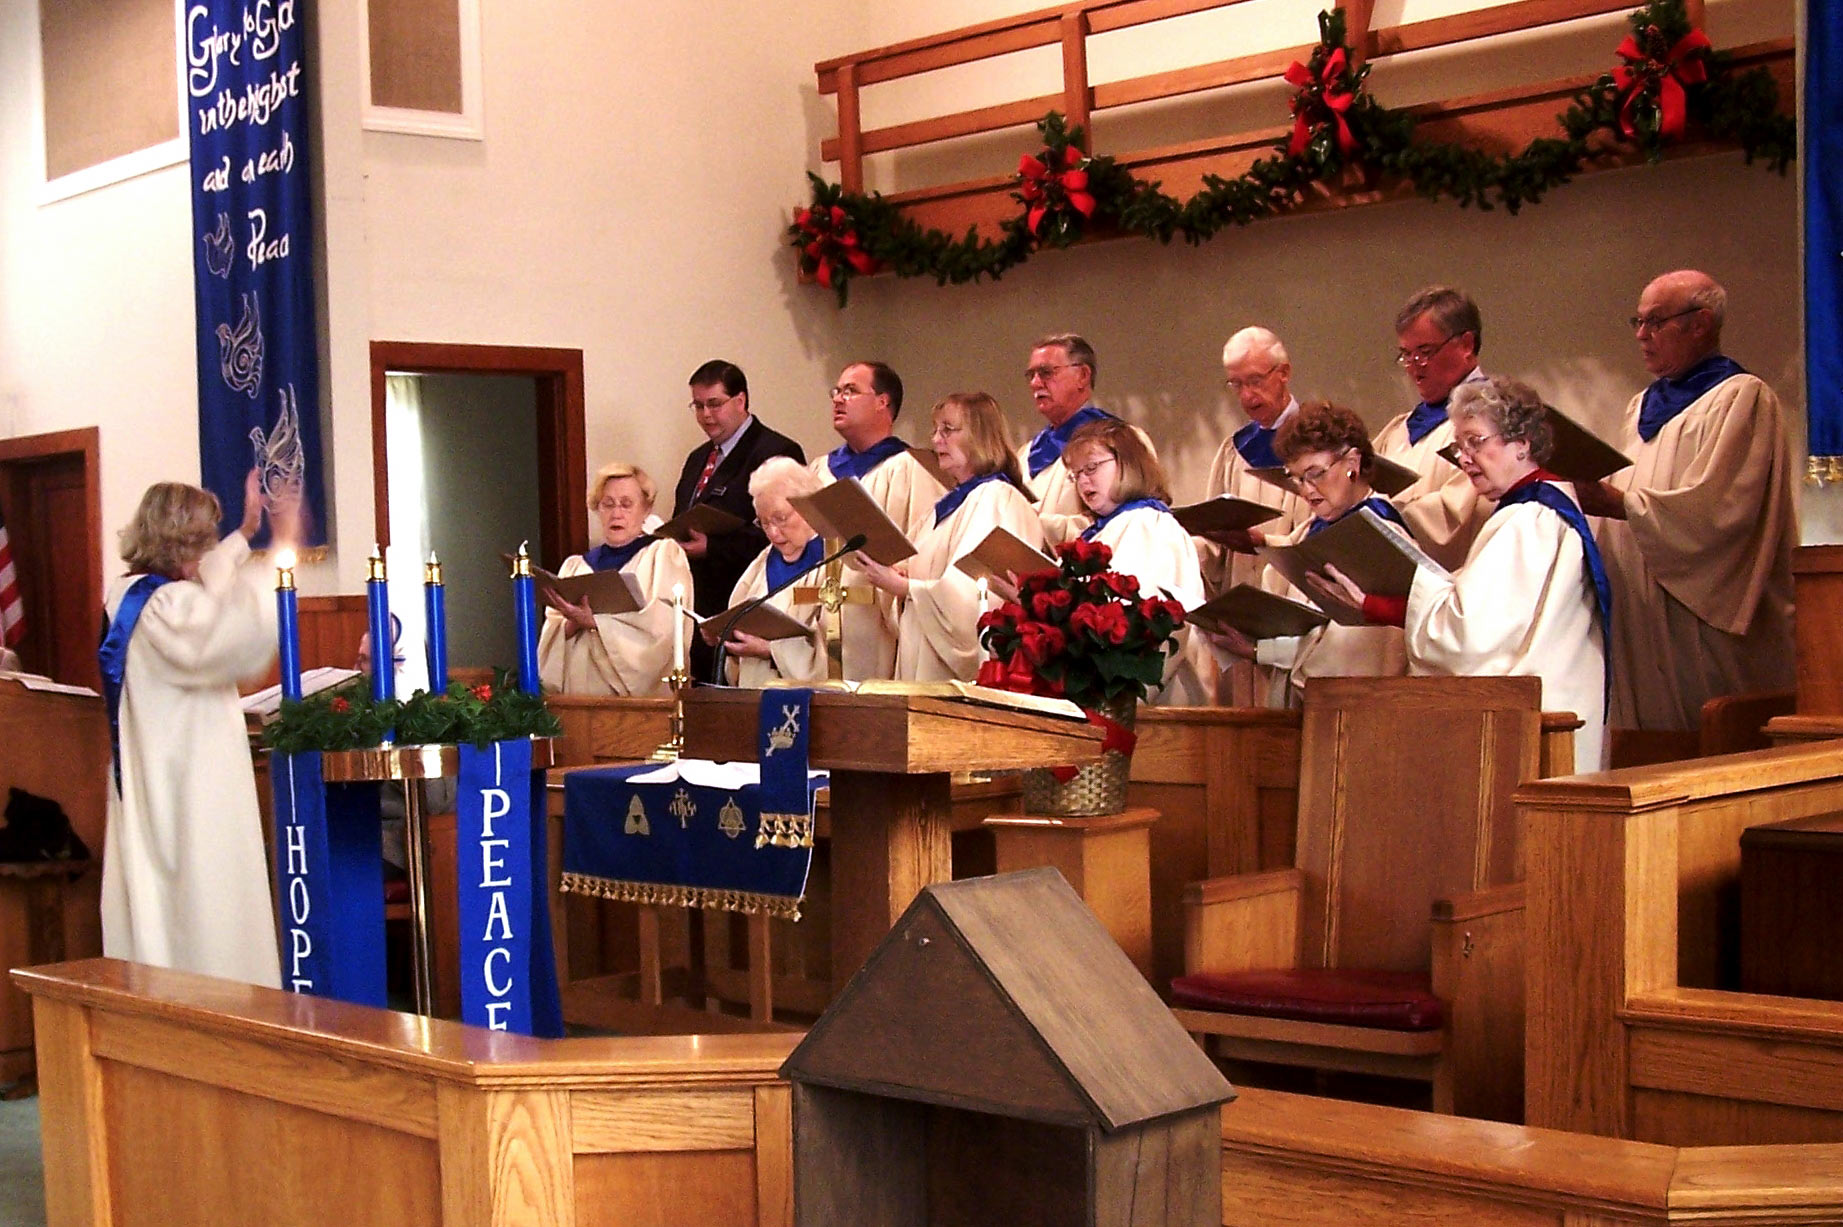 Heshall choir photo